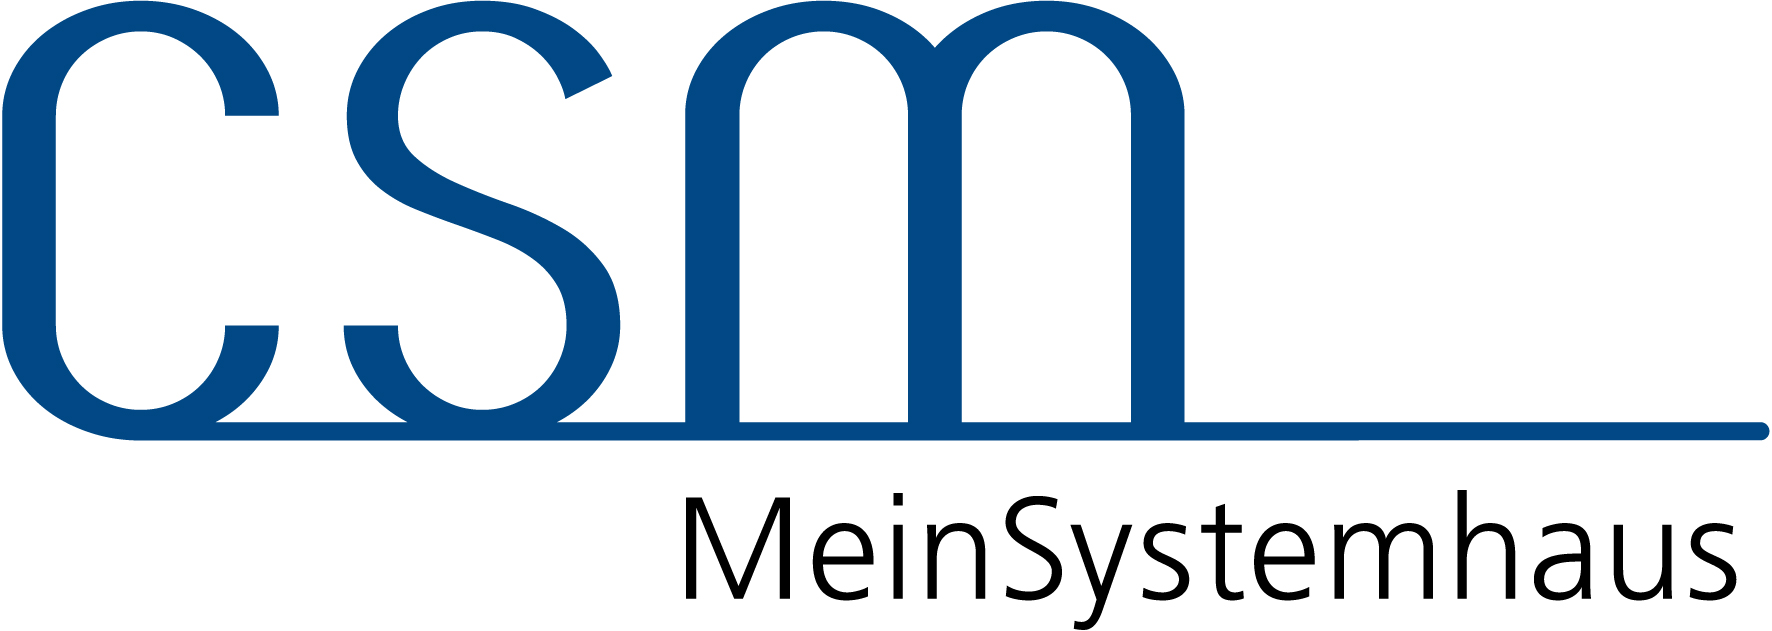 Bild 1 CSM MeinSystemhaus GmbH & Co. KG in Warendorf